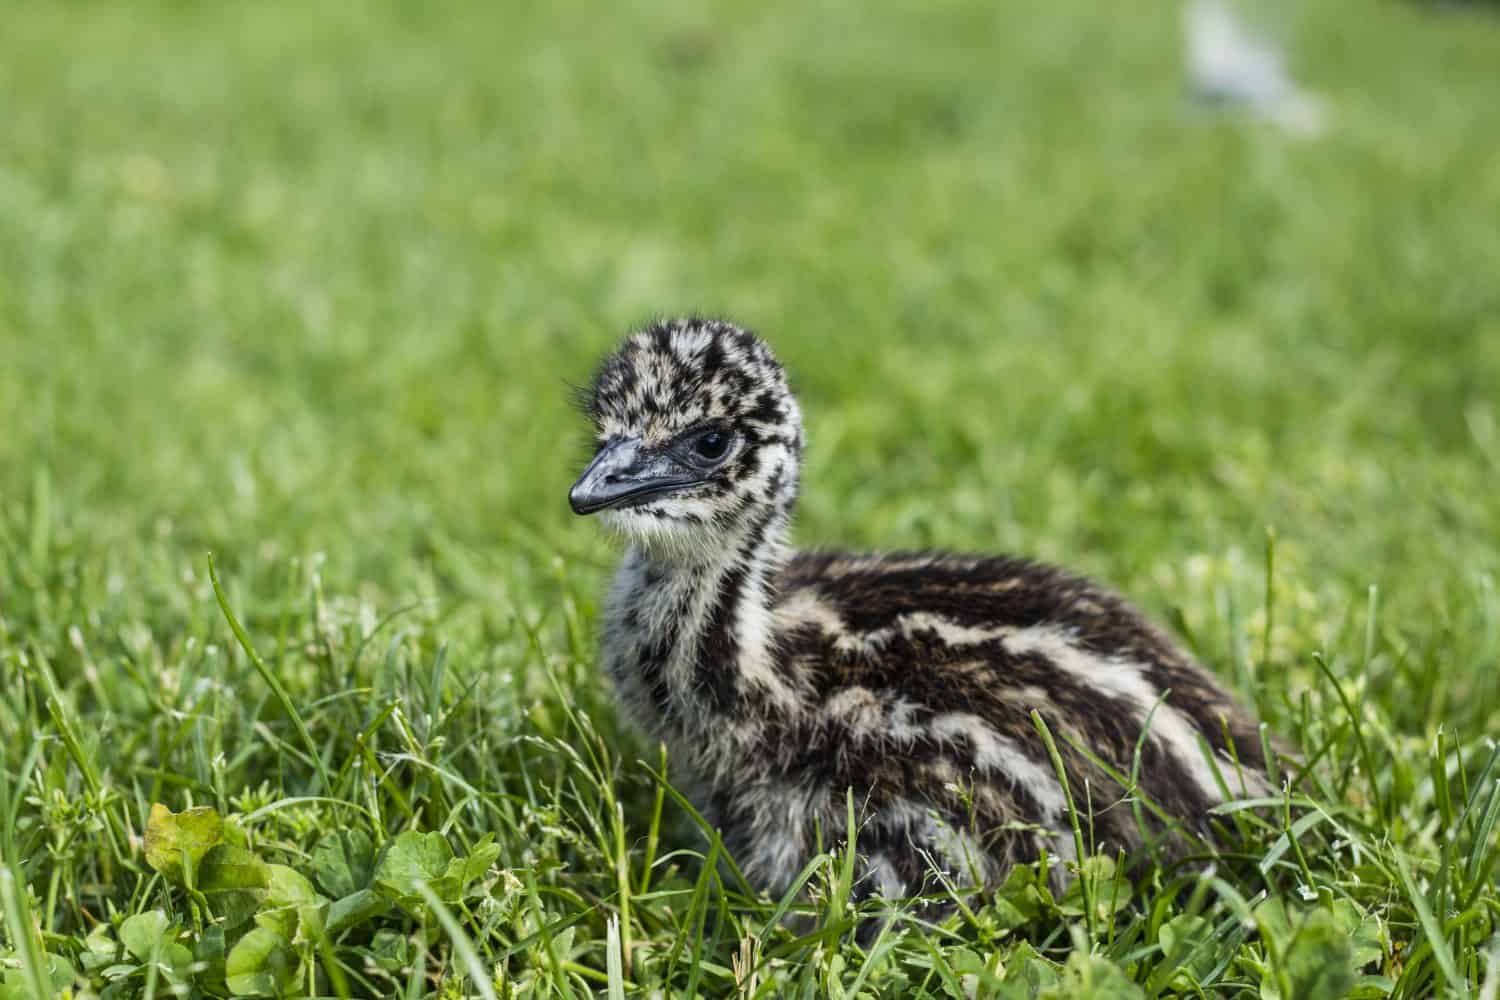 Unusual, cute emu chick in green grass